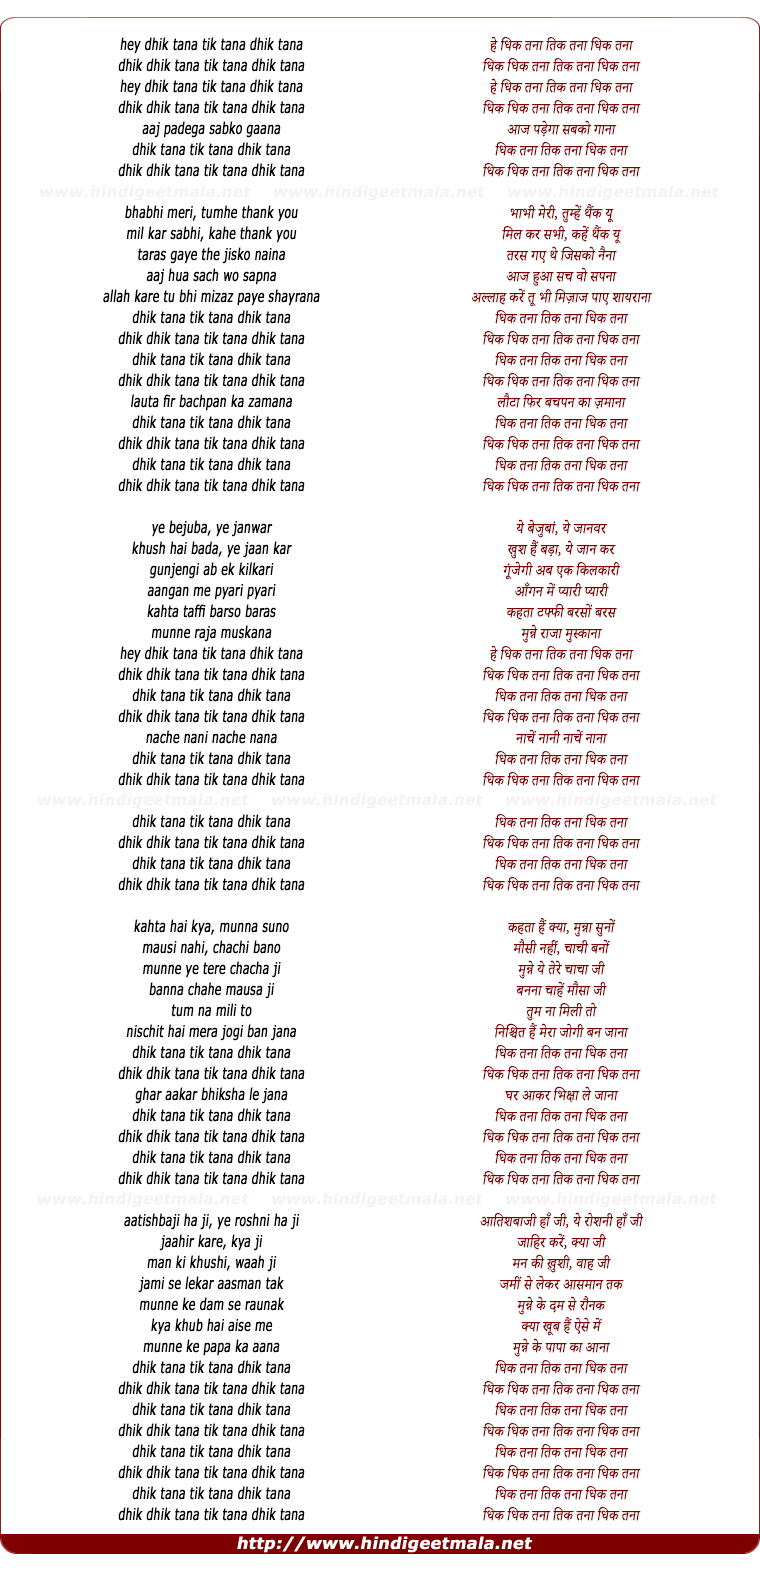 lyrics of song Dhikh Tana Dhikh Tana Dhikh Tana (2)